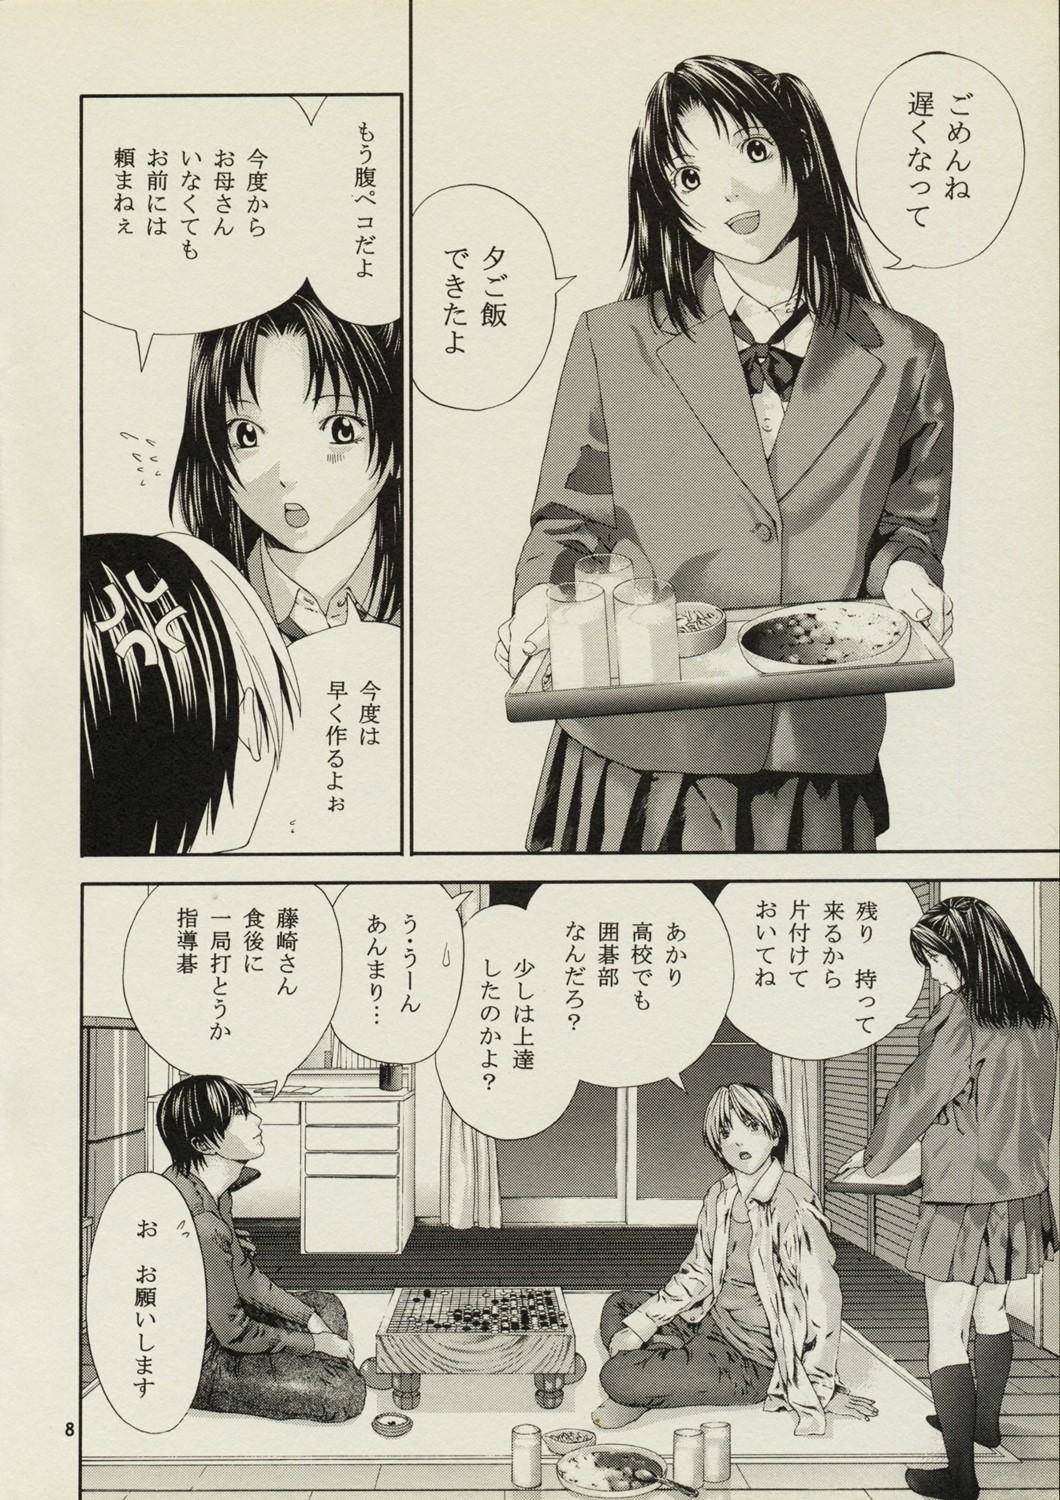 Casado Akari no Shidou Nochi - Hikaru no go Machine - Page 7